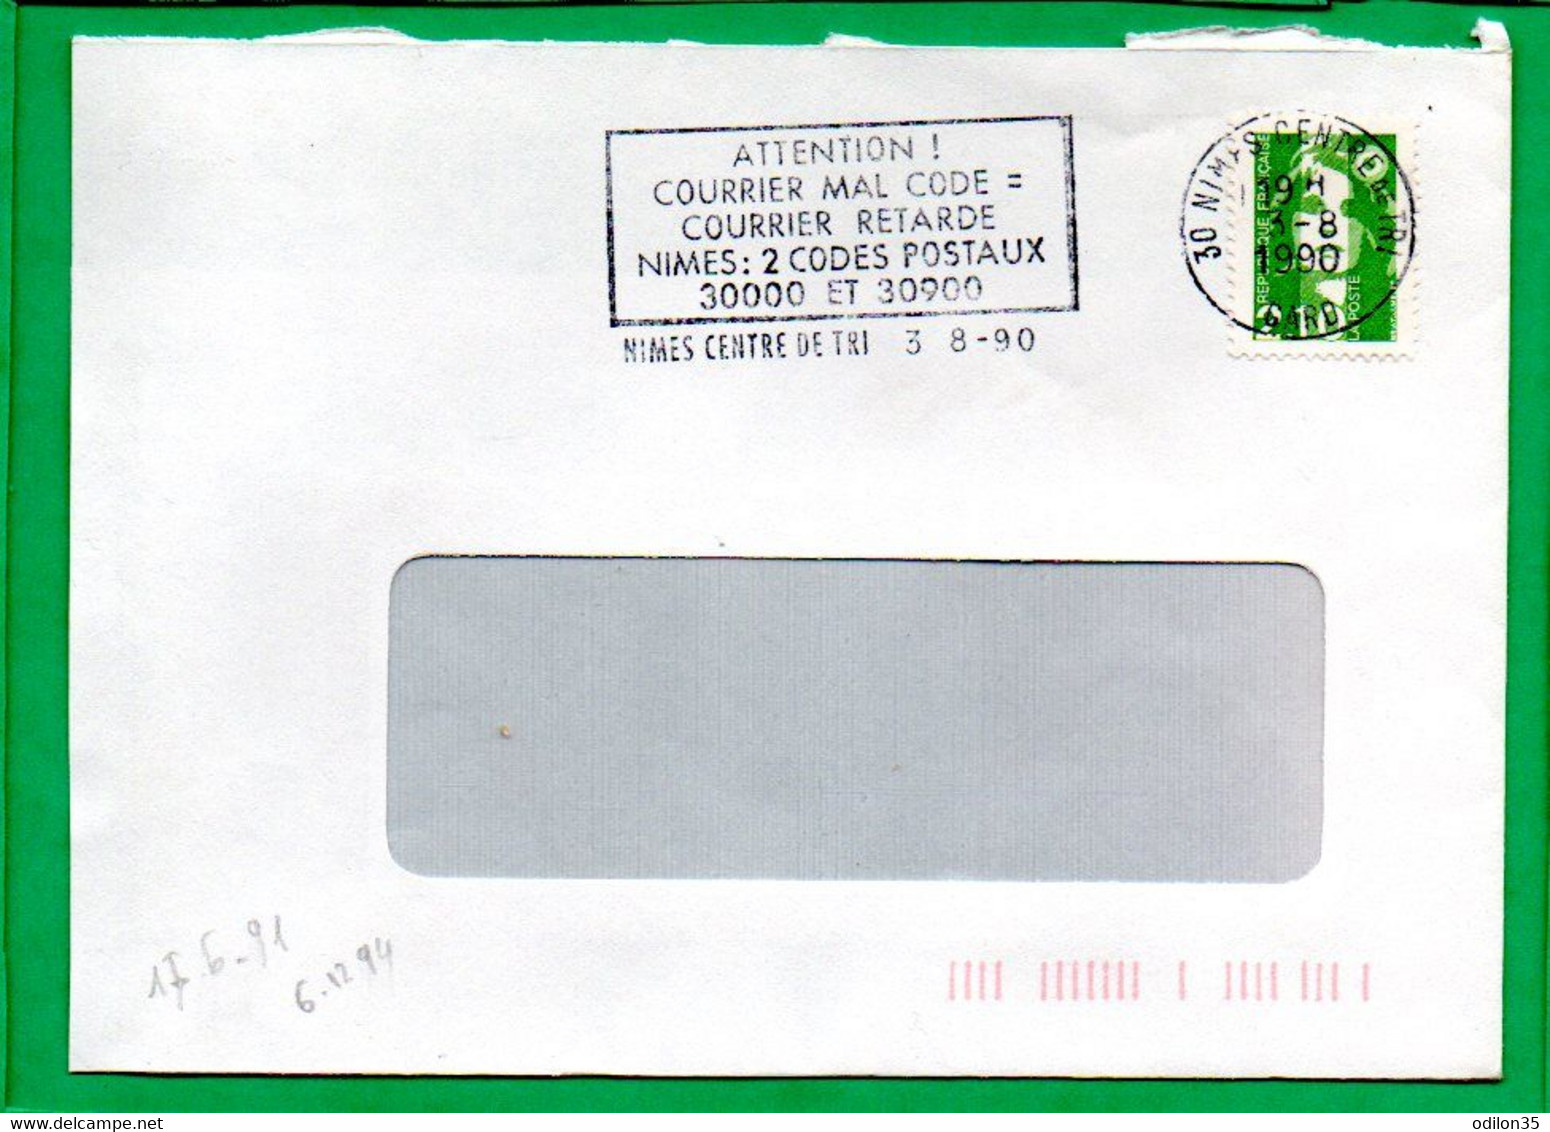 GARD, Nimes Centre De Tri, "Attention! Courrier Mal Codé = Courrier Retardé Nimes 2 Codes Postaux 30000 Et 30900" - Mechanical Postmarks (Advertisement)